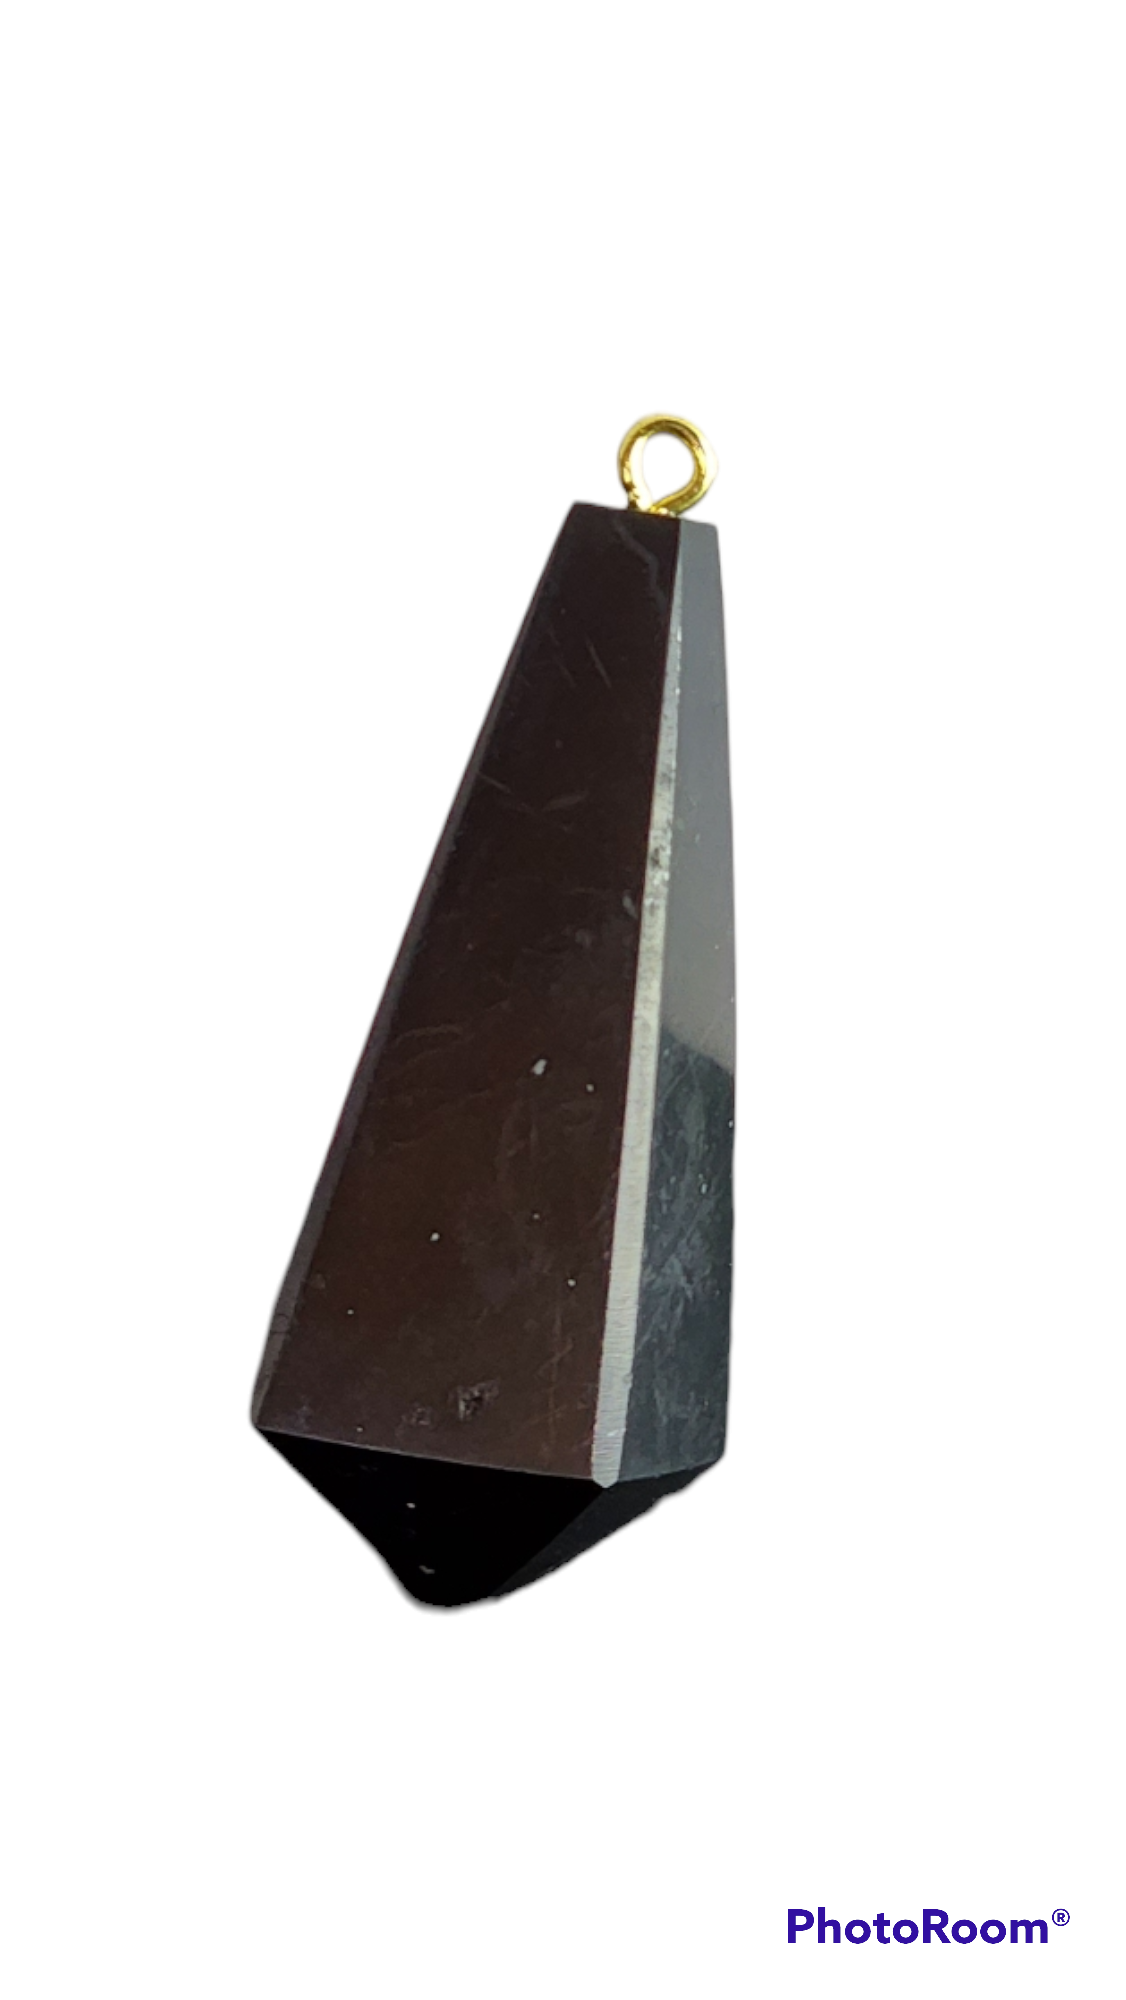 Russian Shungite Crystal Pendulum Pendant - Reiki Infused